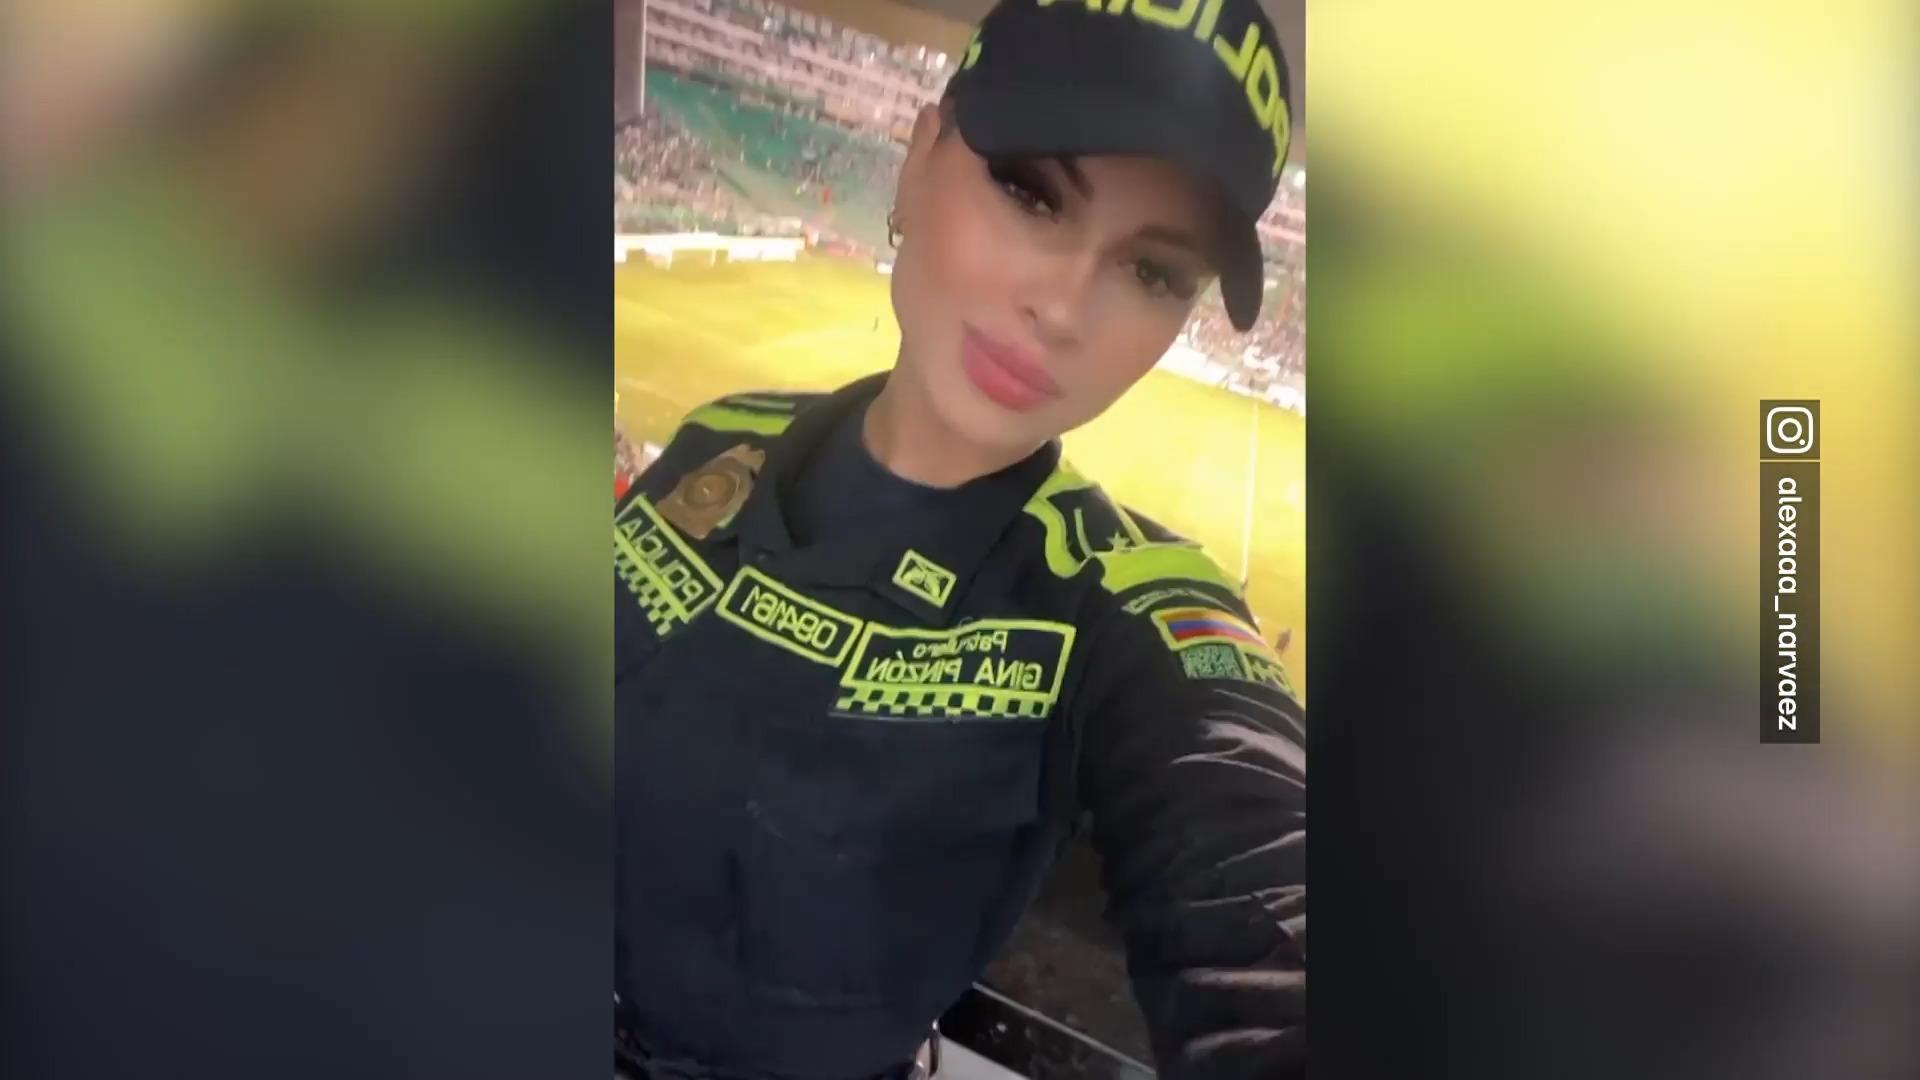 Sexy Polizistin begeistert Fans im Stadion Nun ist sie Instagram-Star!